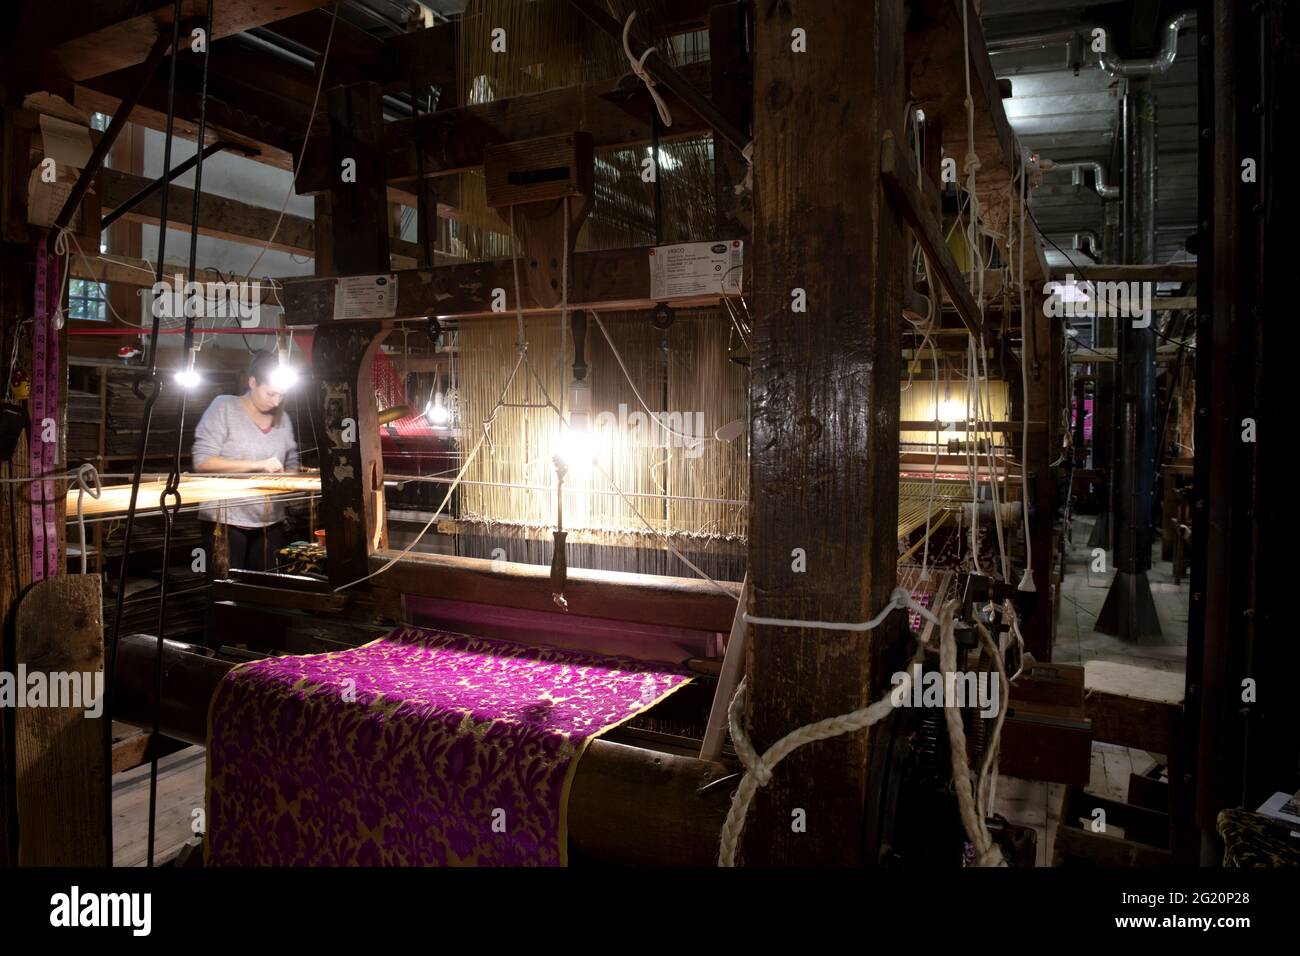 Atelier traditionnel de tisserands de Bevilacqua, les femmes travaillent sur des tisserres en bois vintage, produisant des textiles de luxe, à Venise depuis 1875 . Banque D'Images